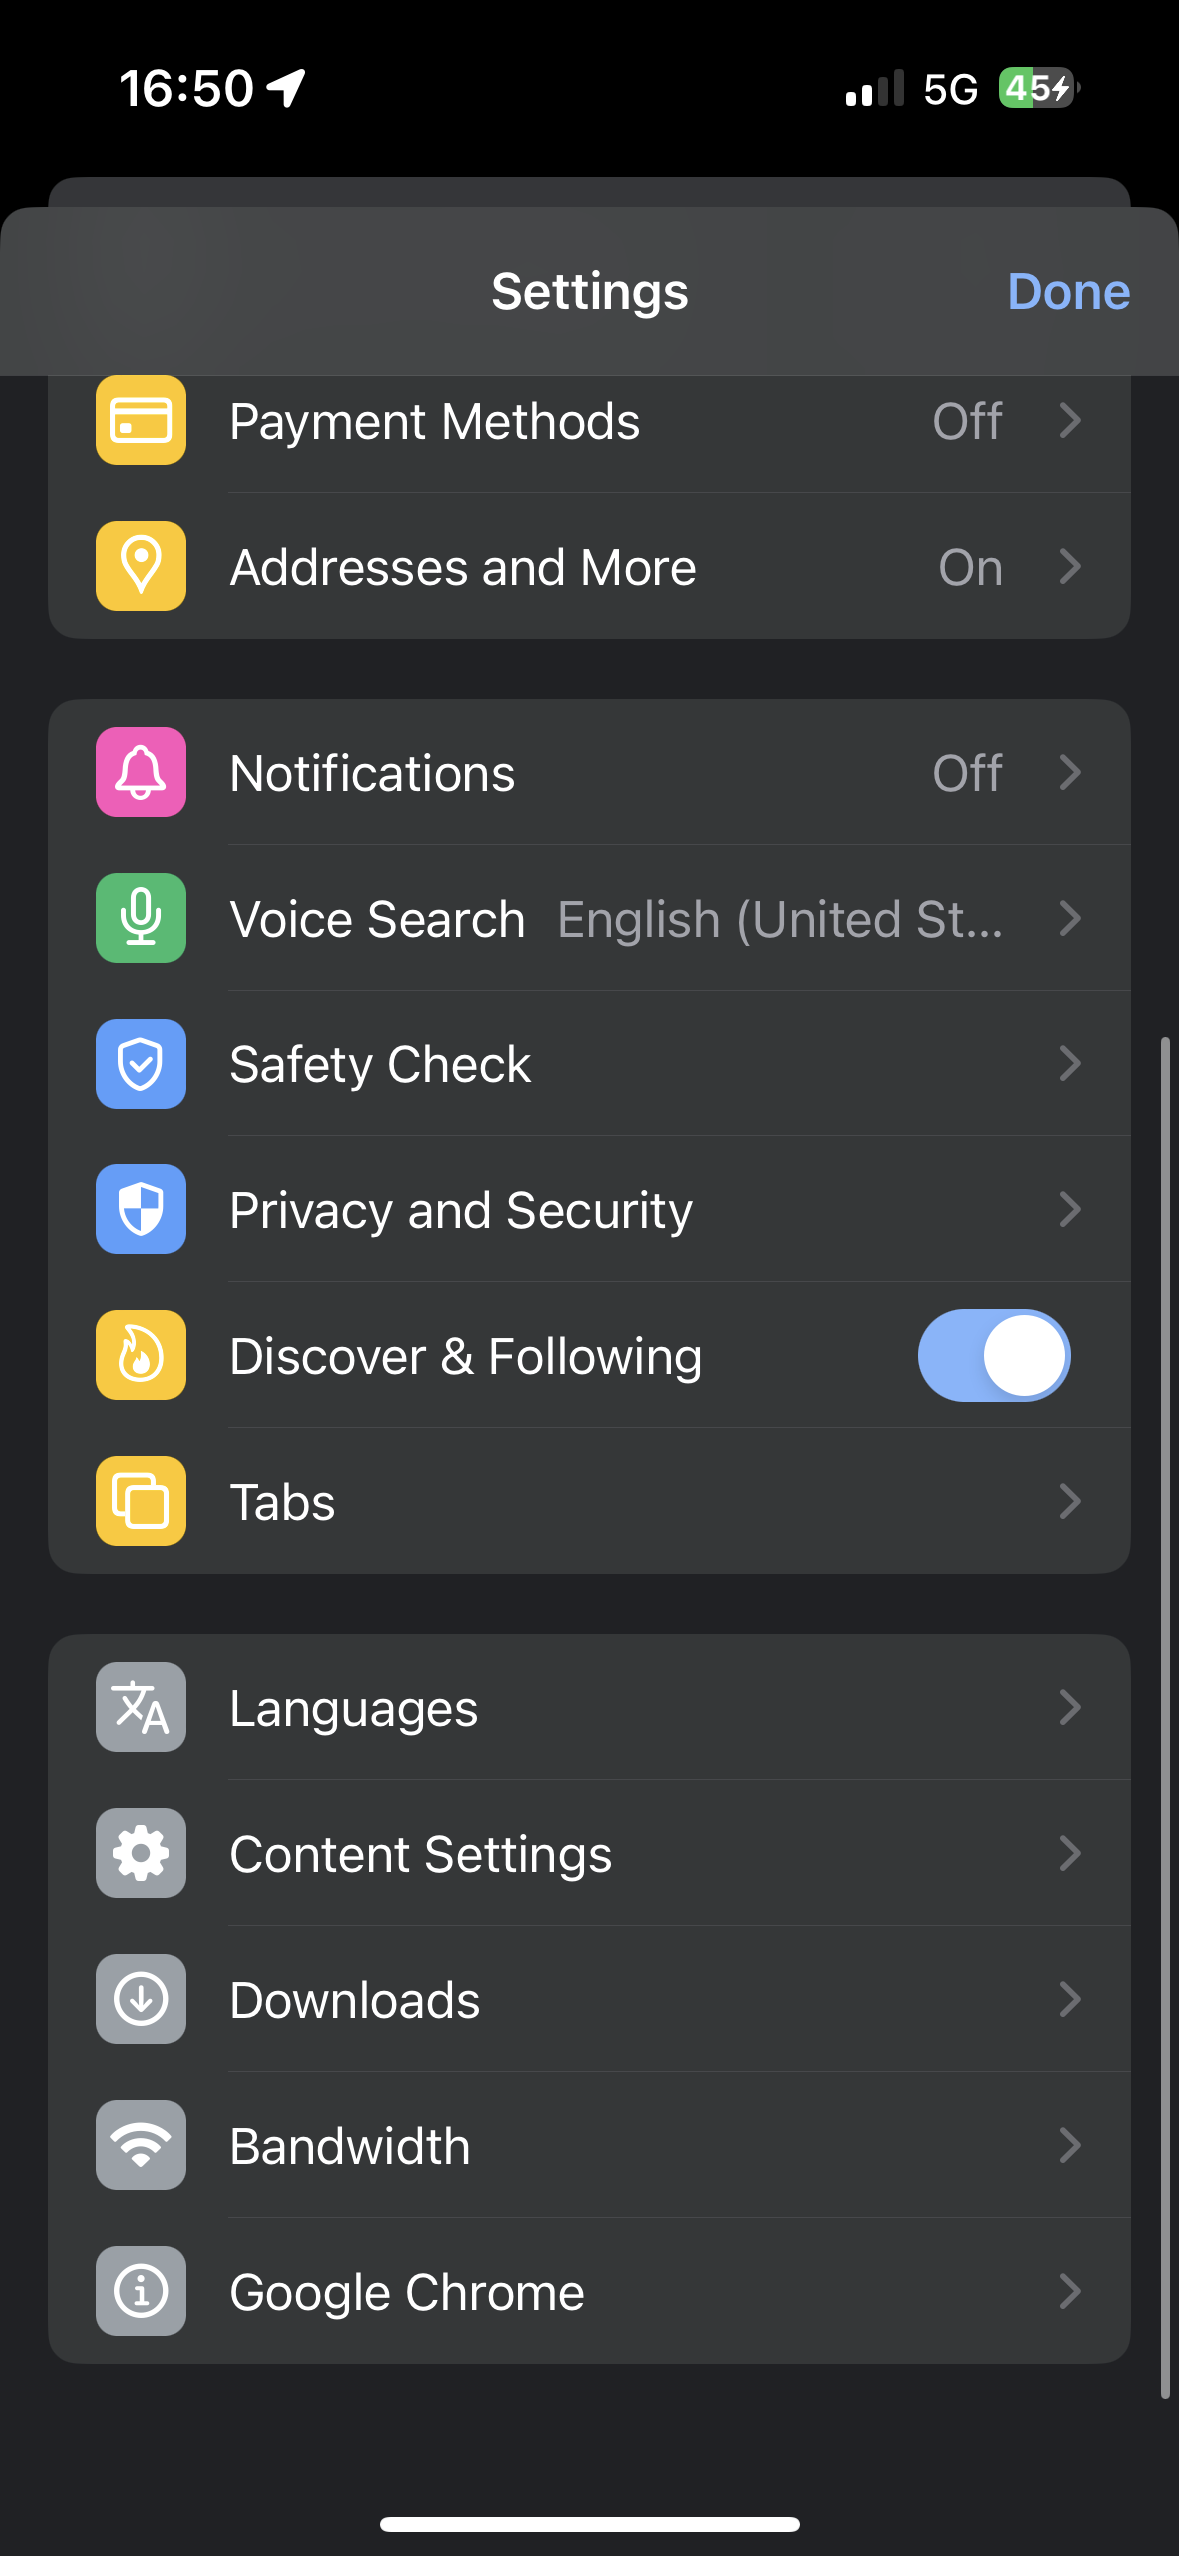 Chrome on iOS settings